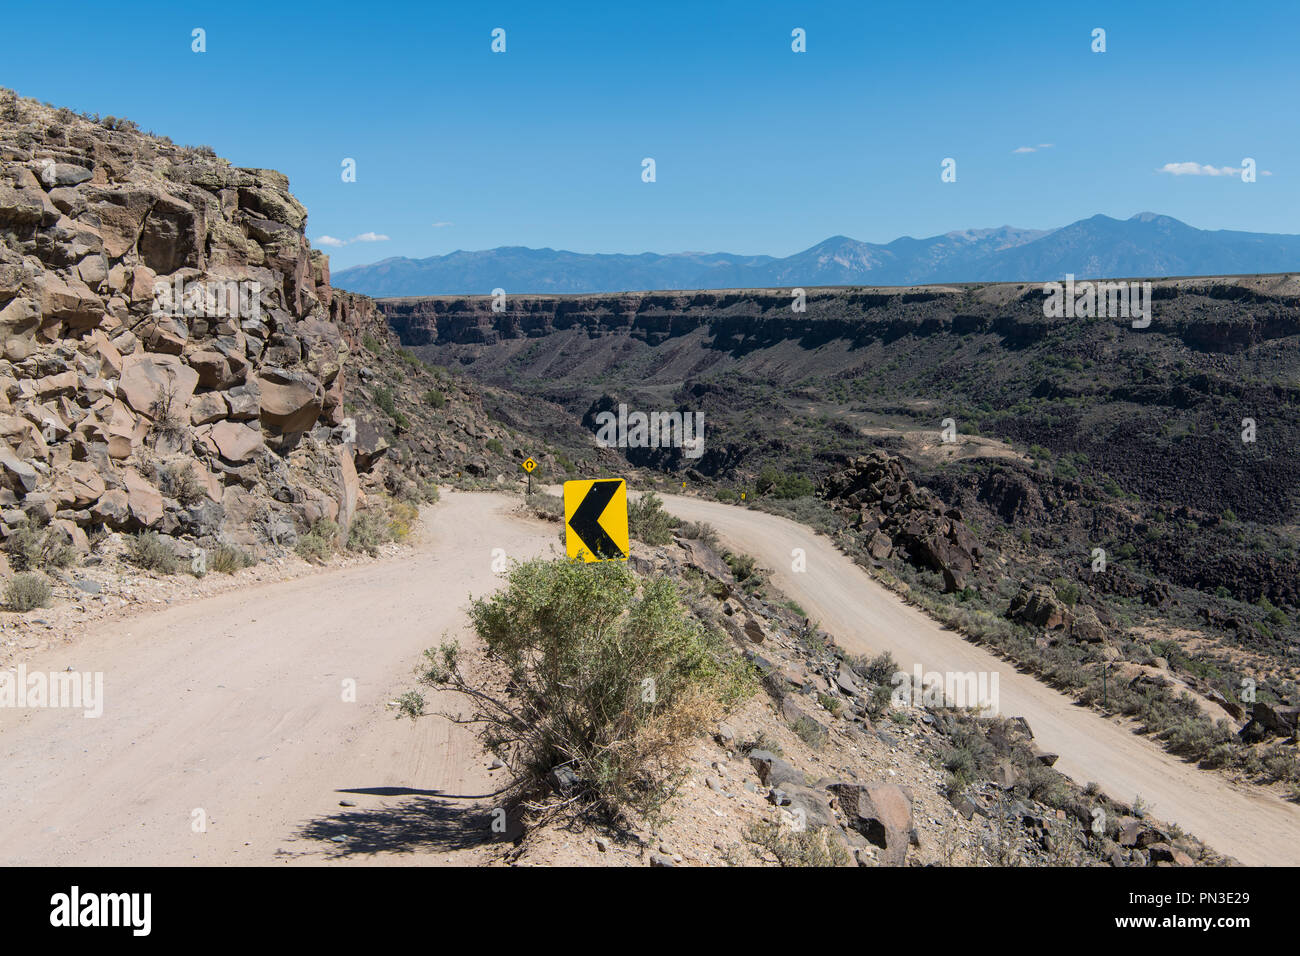 Direktionale Verkehrszeichen an einer Spitzkehre auf eine gefährliche Straße am Rande der Schlucht des Rio Grande Schlucht in der Nähe von Taos, New Mexico Stockfoto